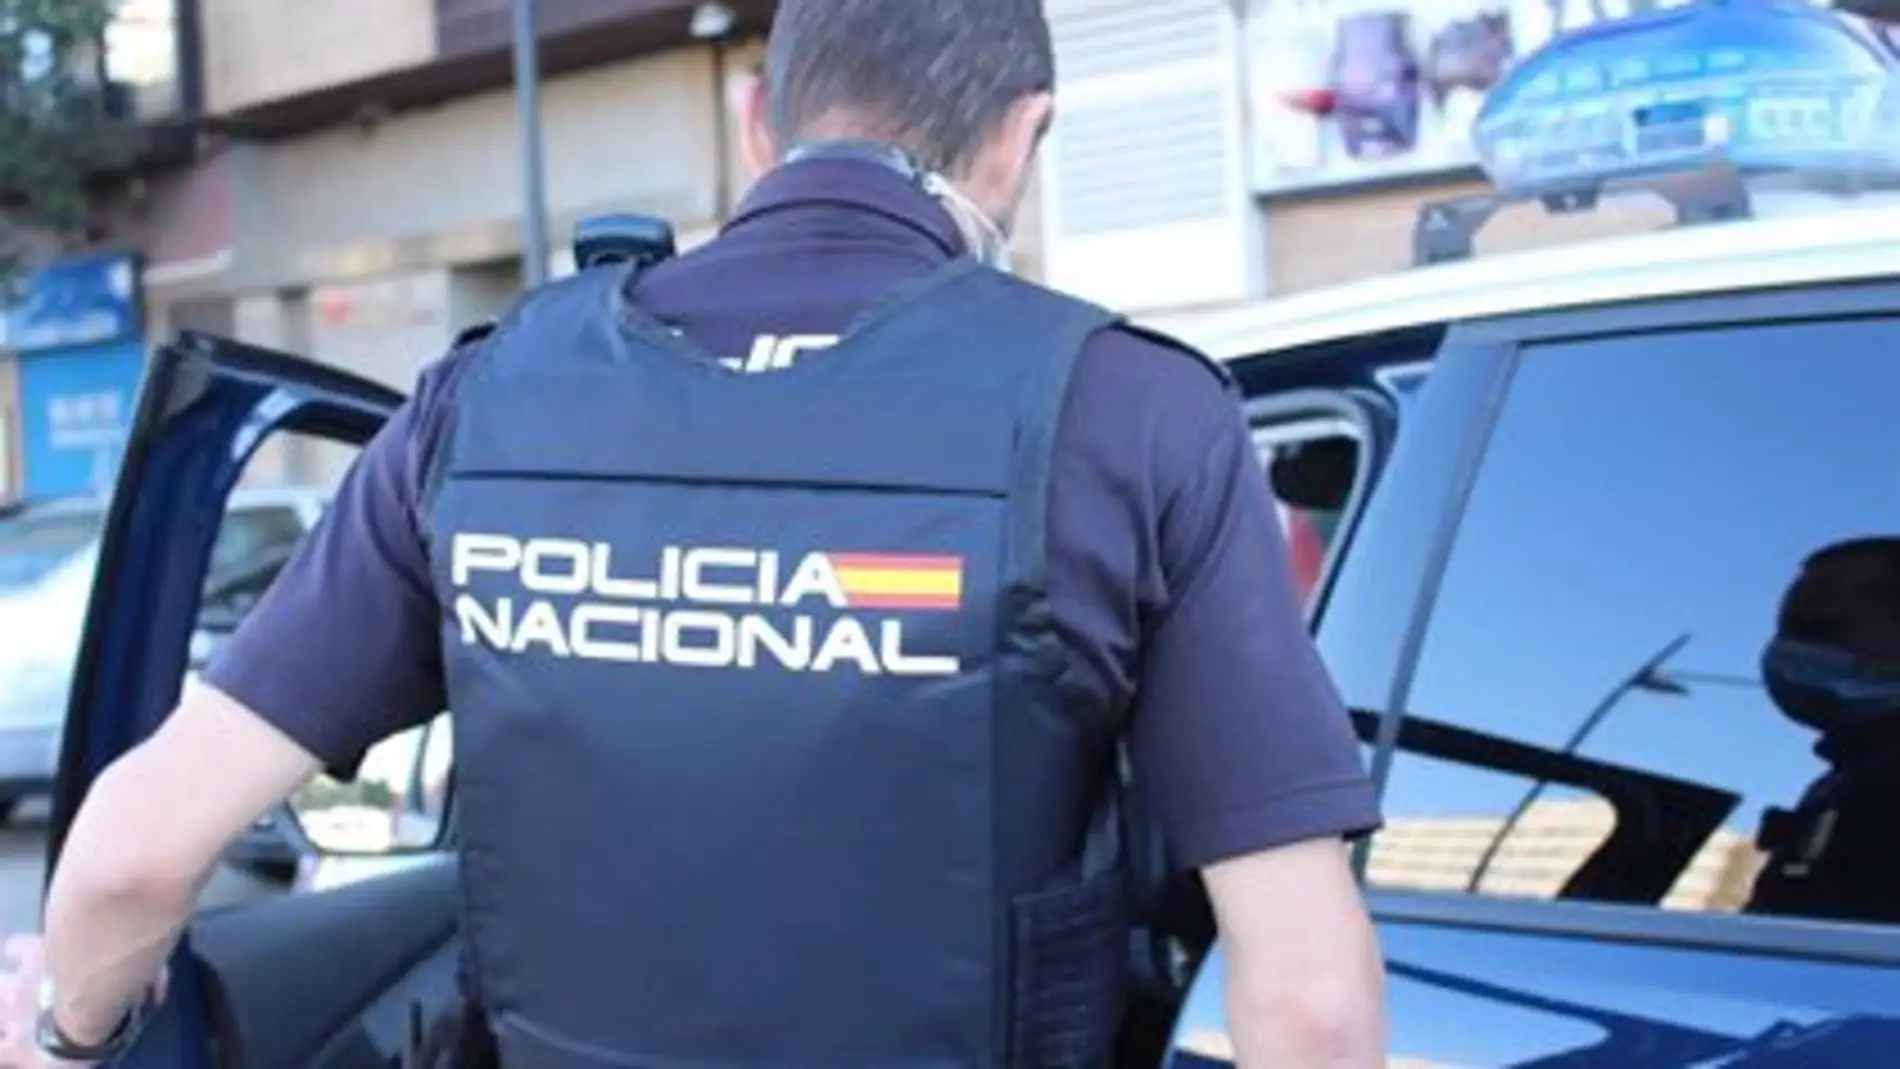 PULSERA POLICÍA NACIONAL AZUL